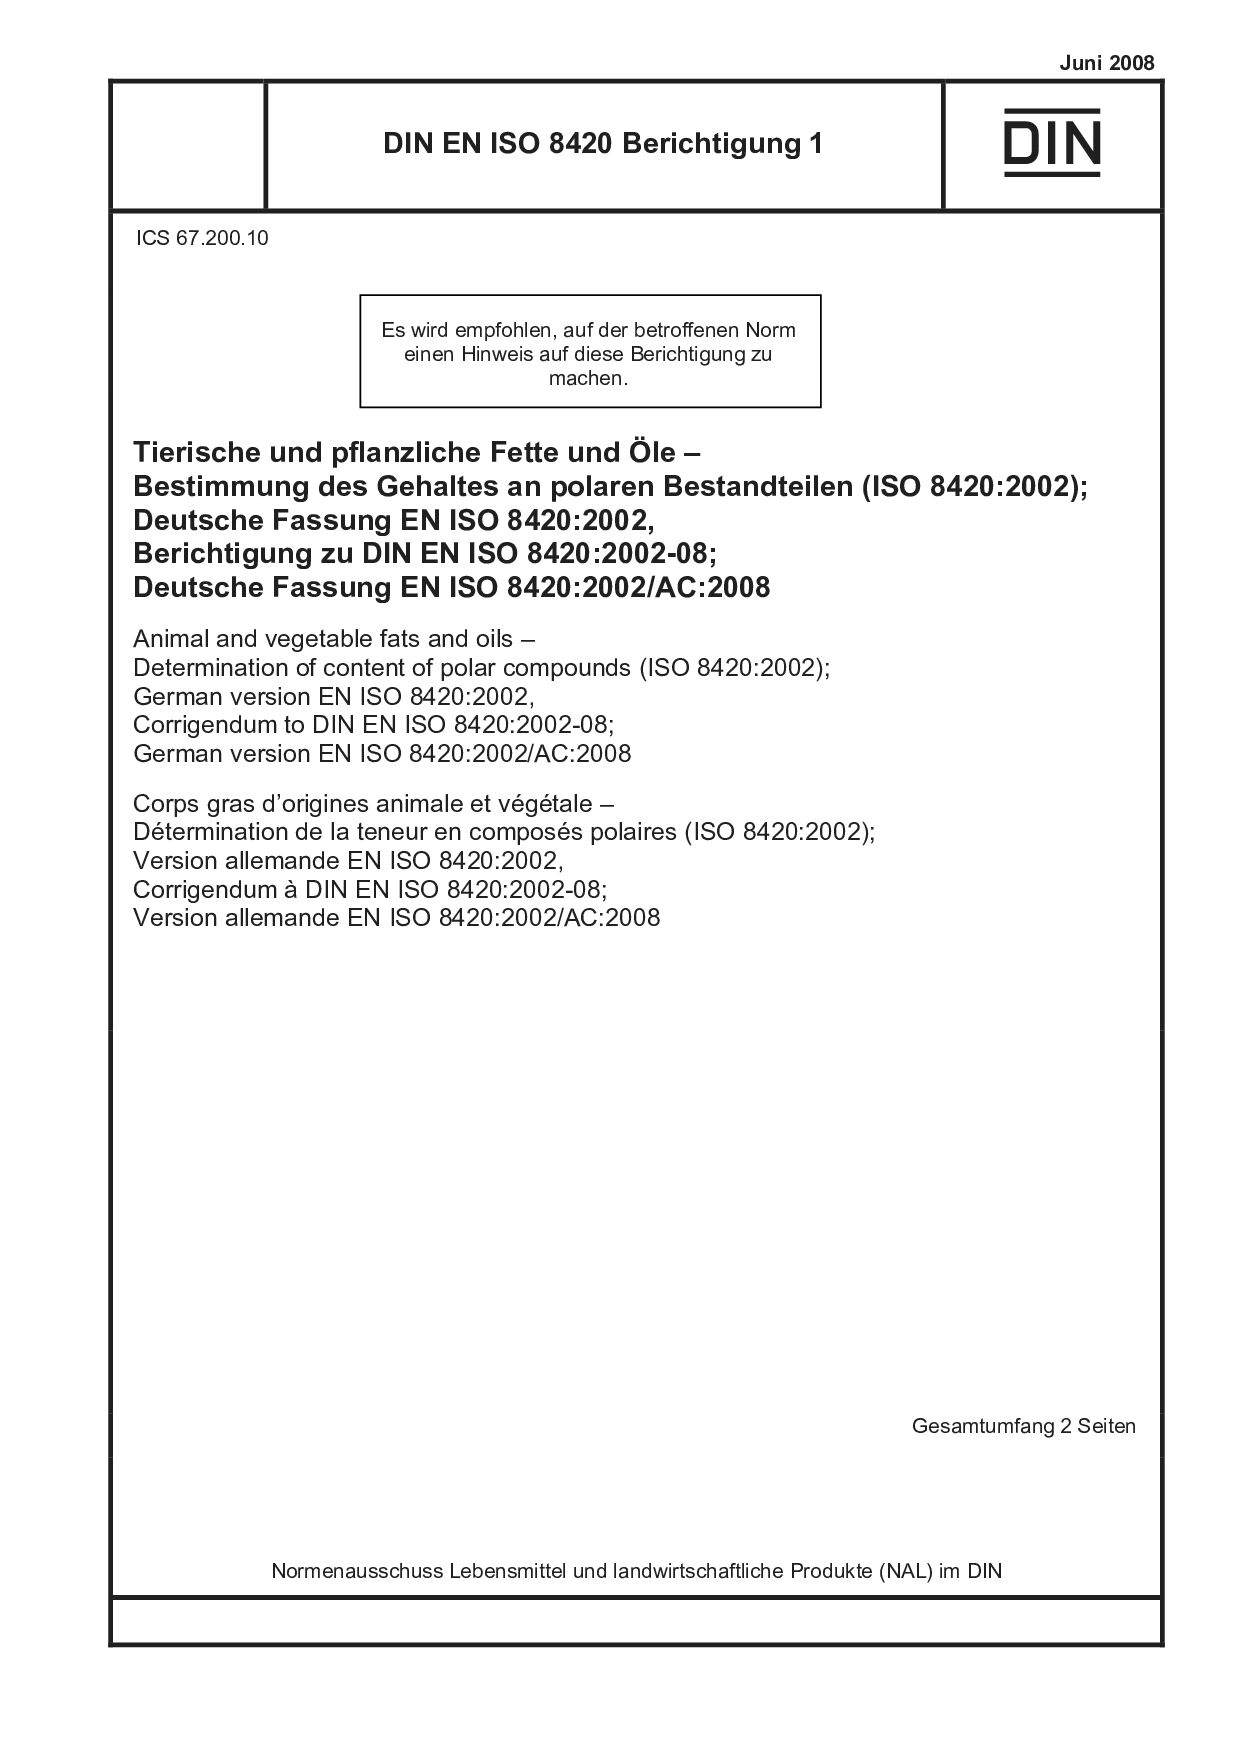 DIN EN ISO 8420 Berichtigung 1:2008